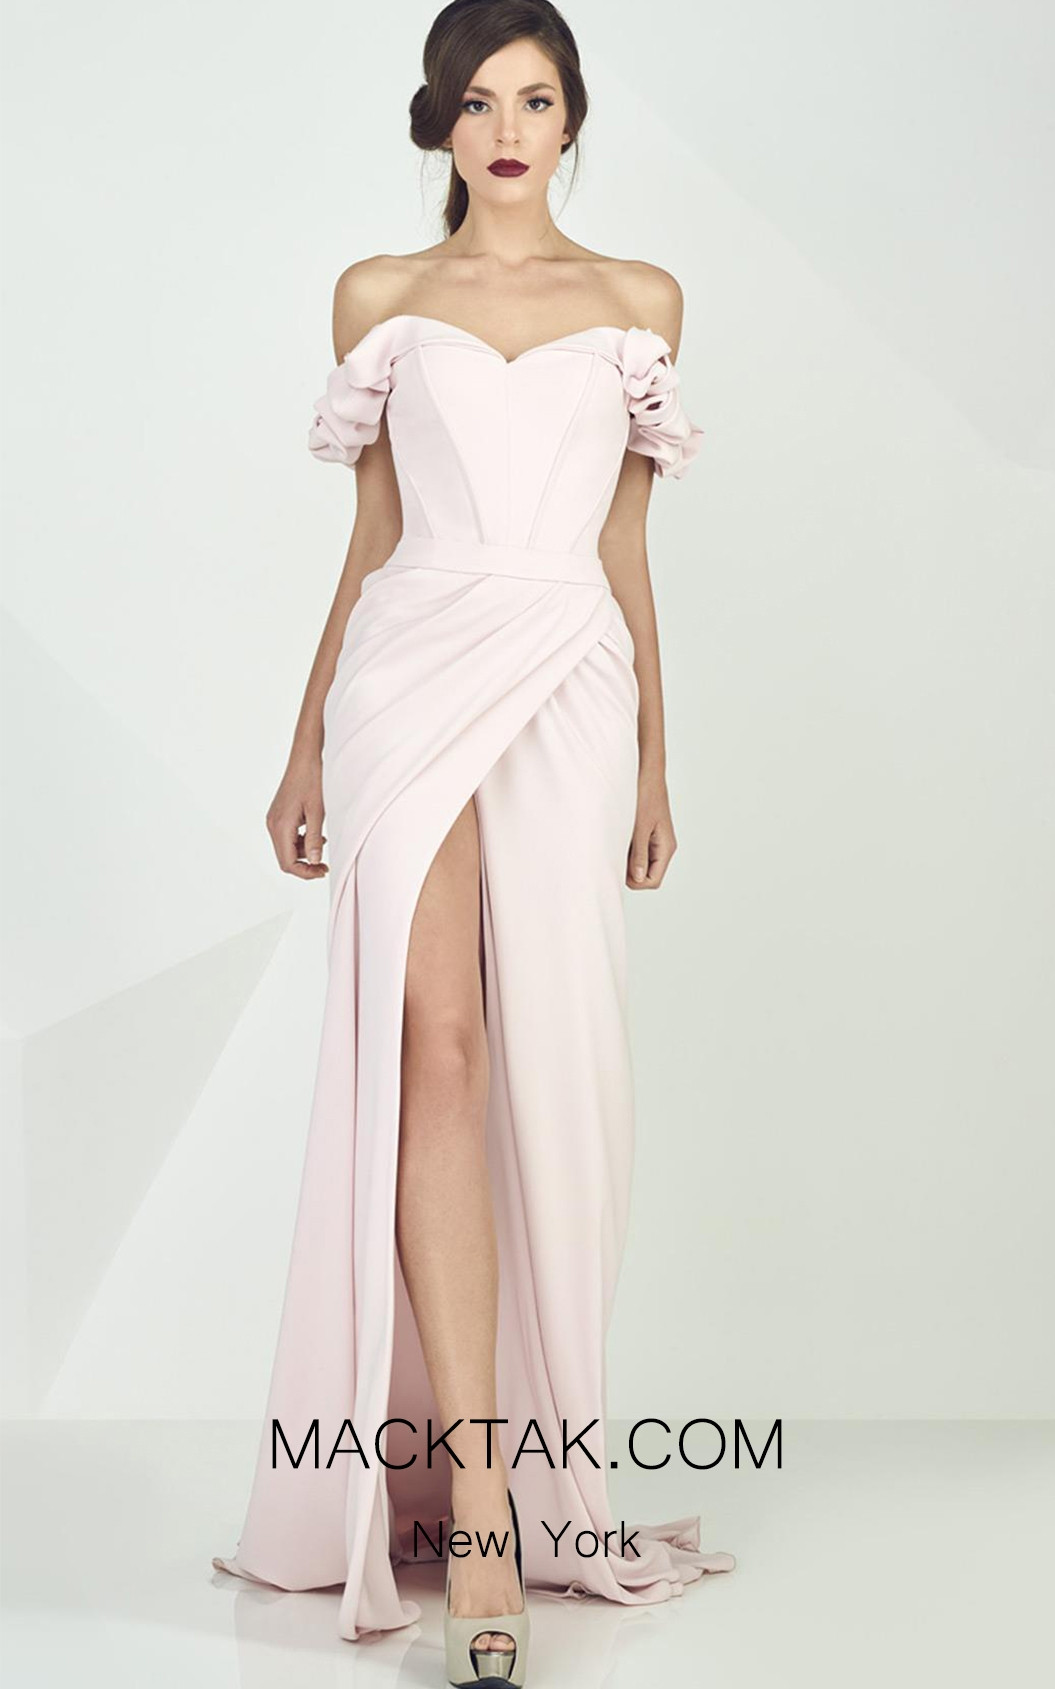 MNM G0665 Evening Dress - MackTak.com New York Online Store